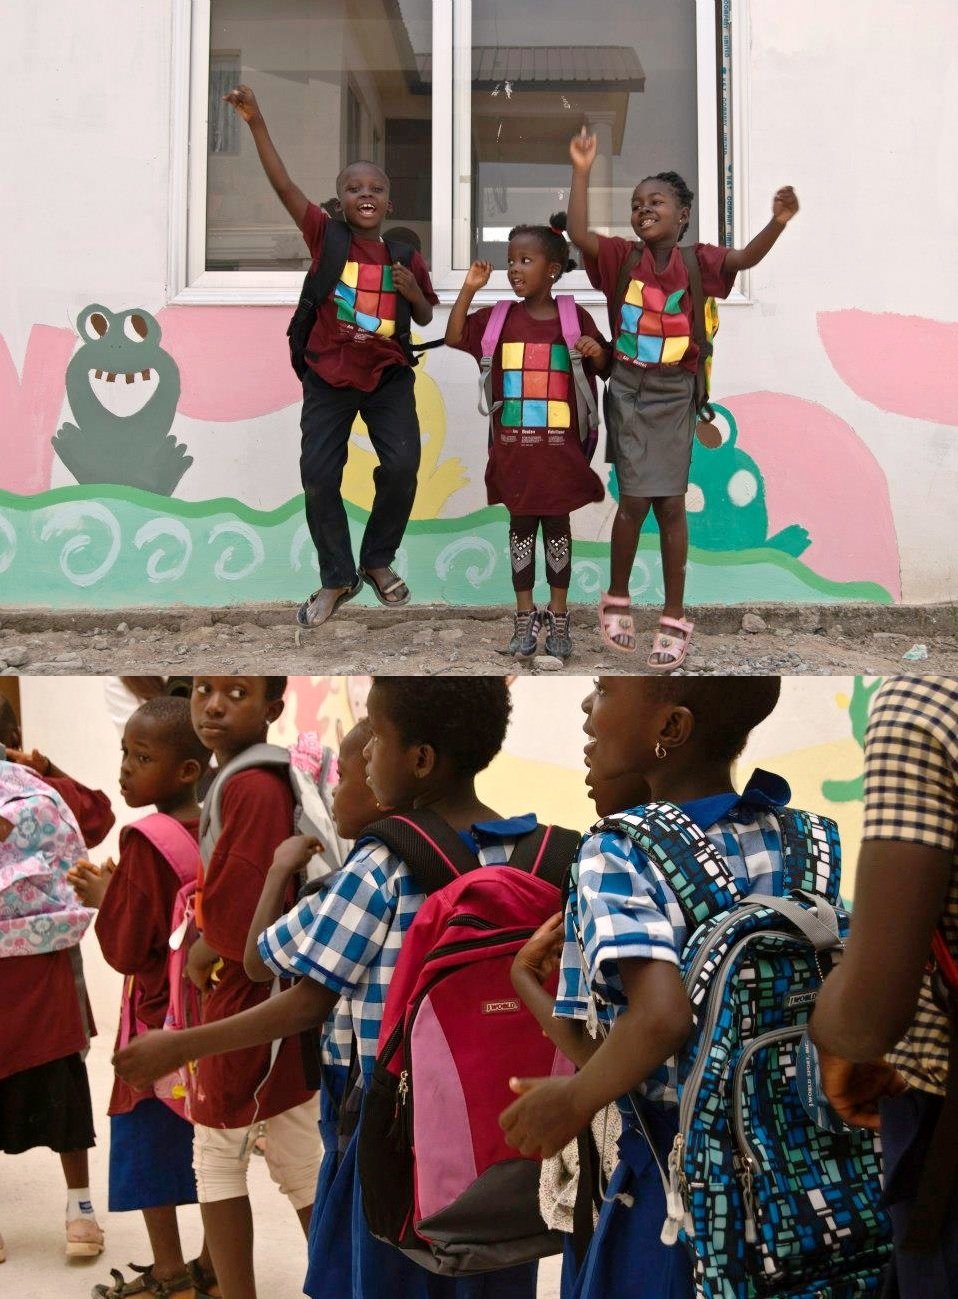 J World New York donates backpacks to Kids in Ghana